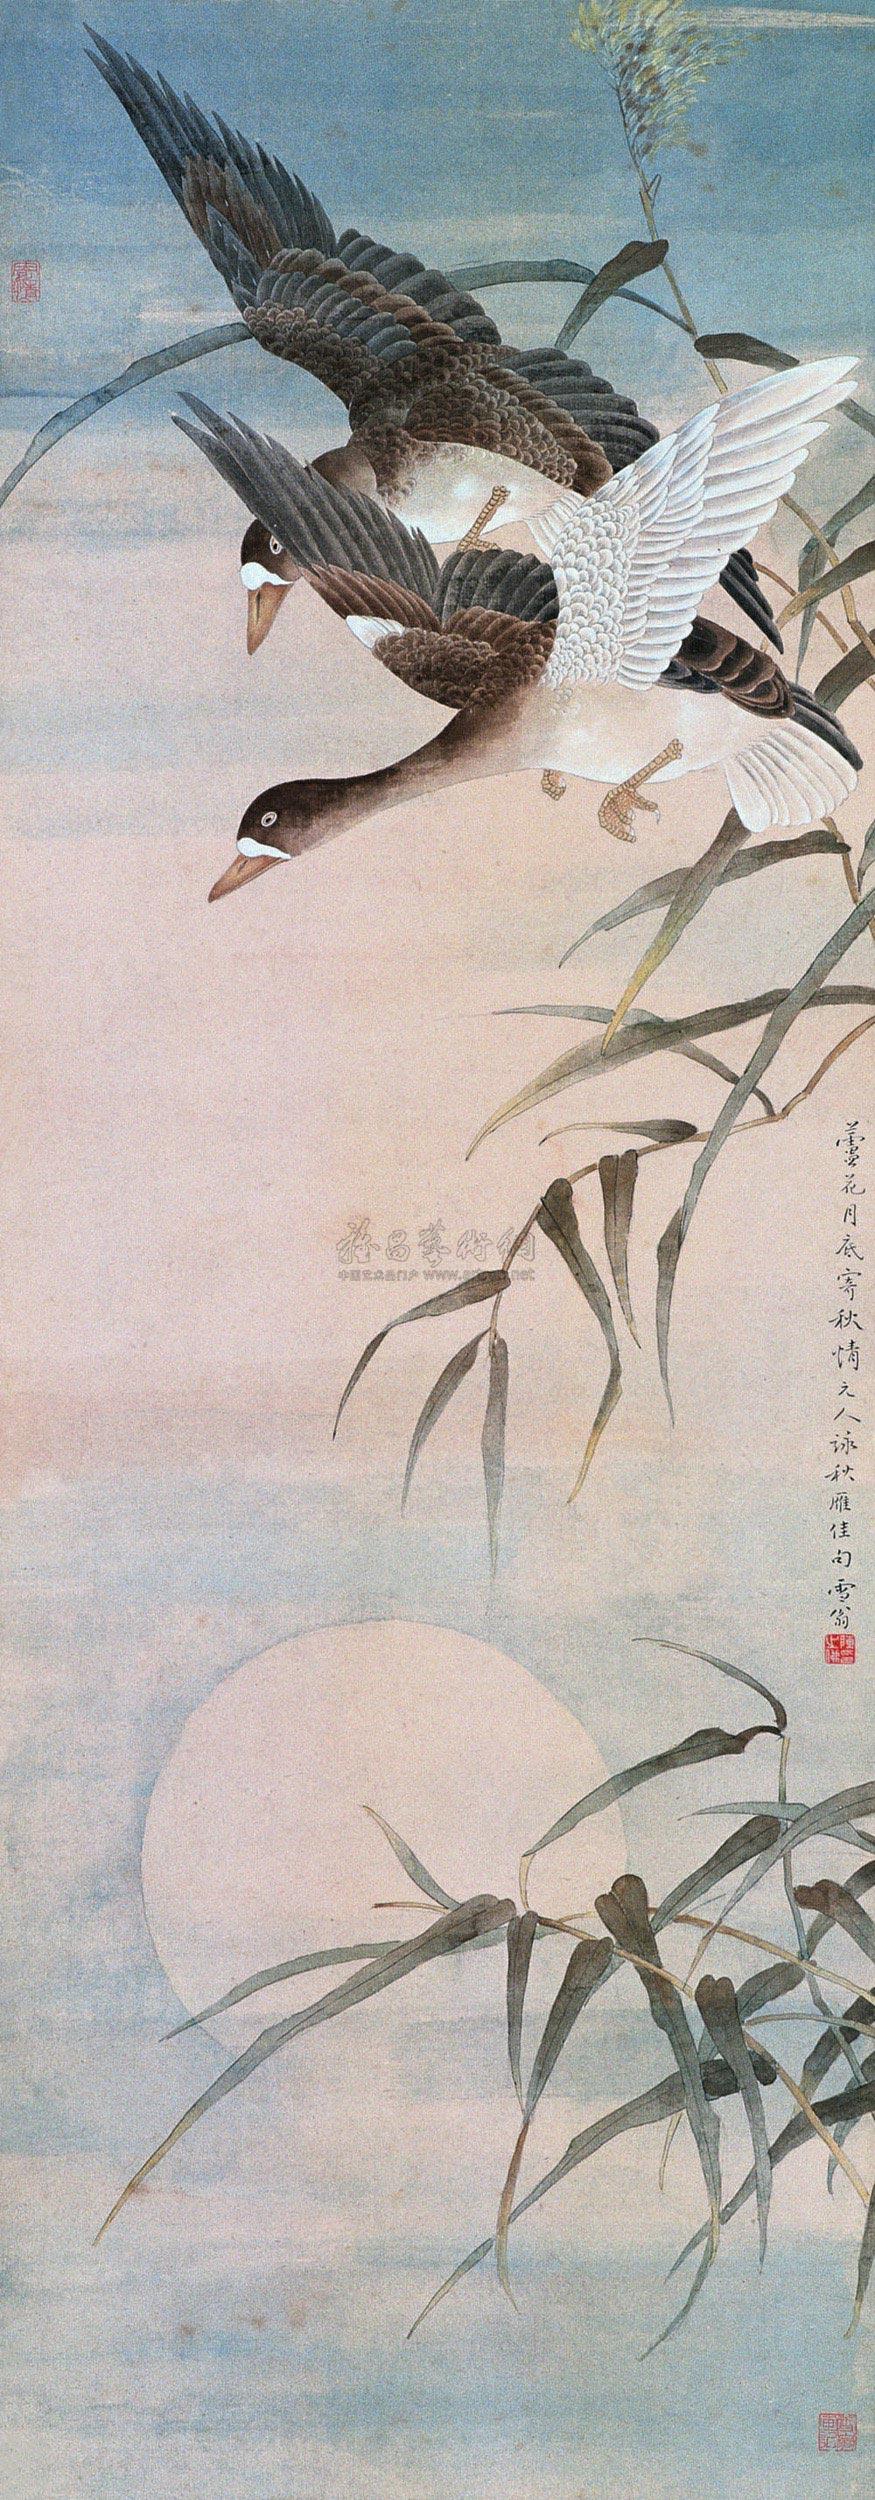 宁波月湖双燕图图片